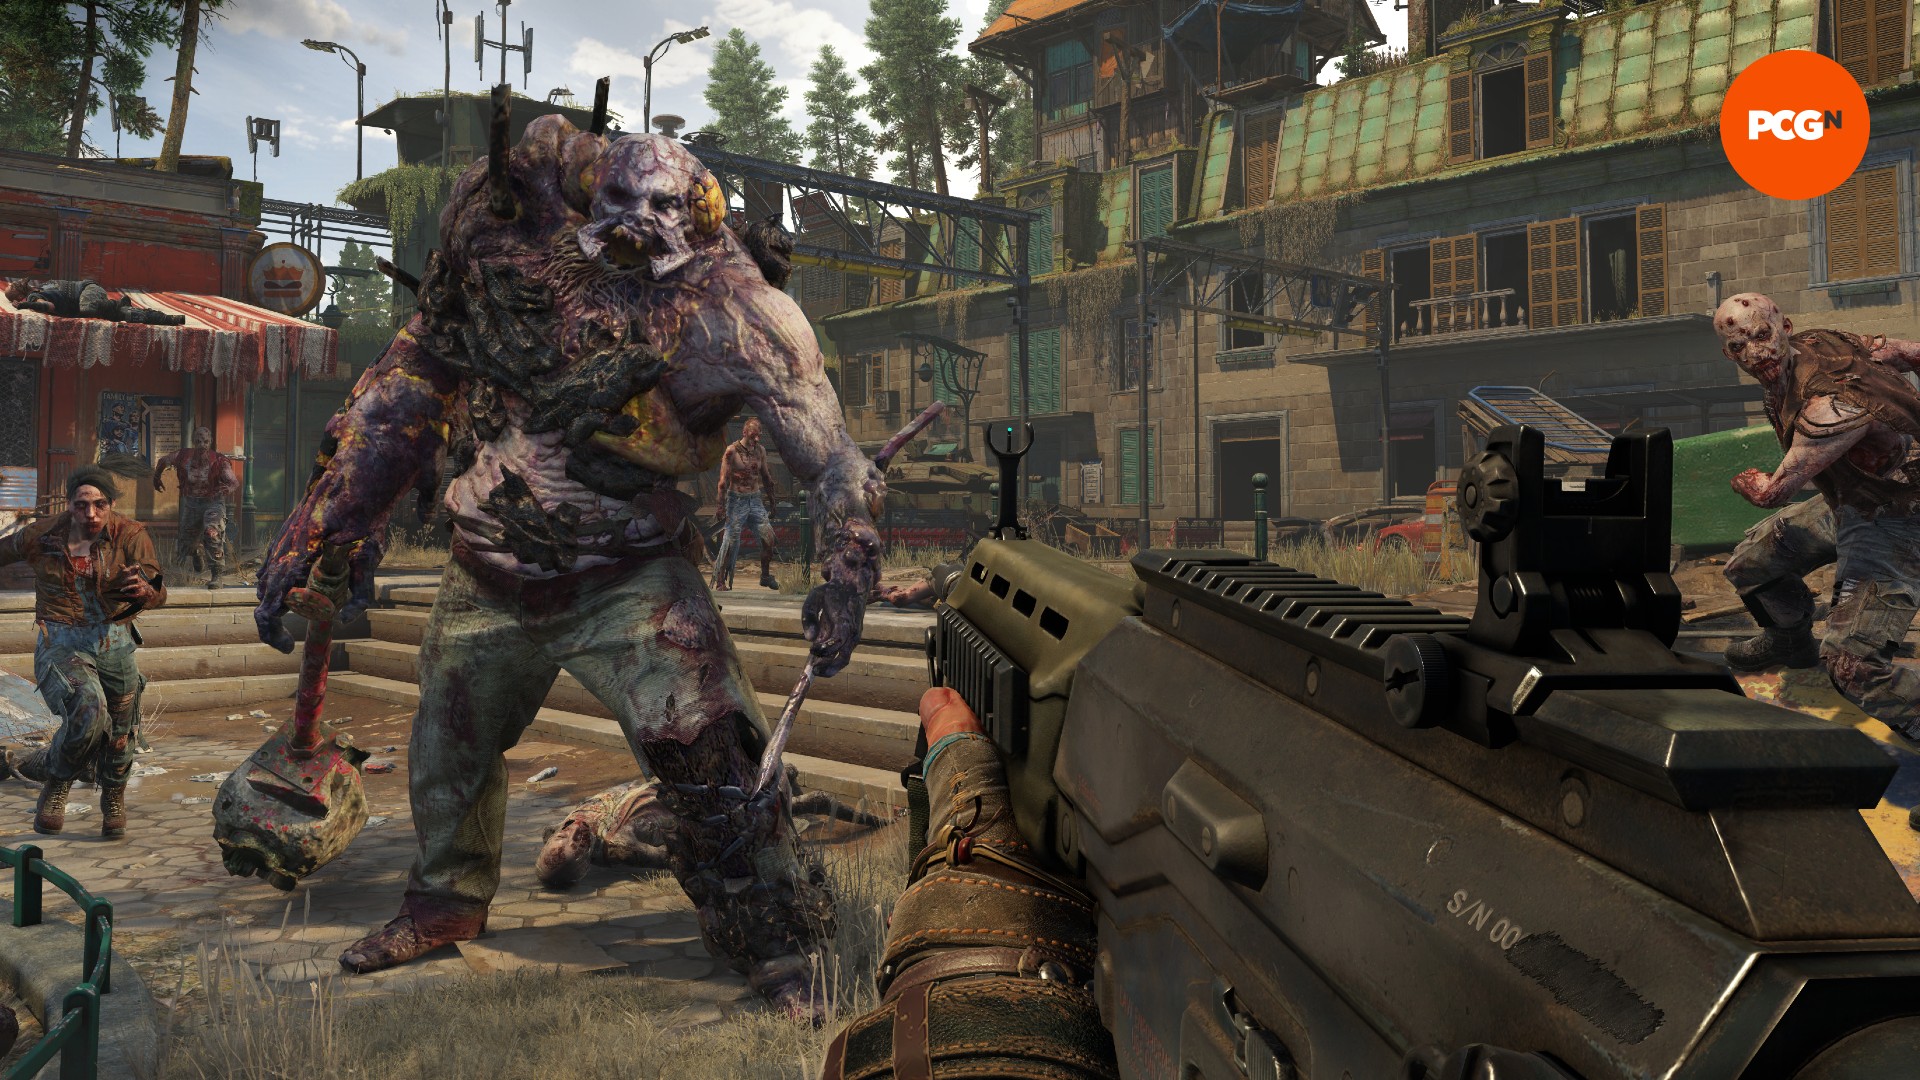 Una enorme criatura zombi descomunal se mueve hacia un hombre que sostiene un arma, con zombis más pequeños flanqueándola.